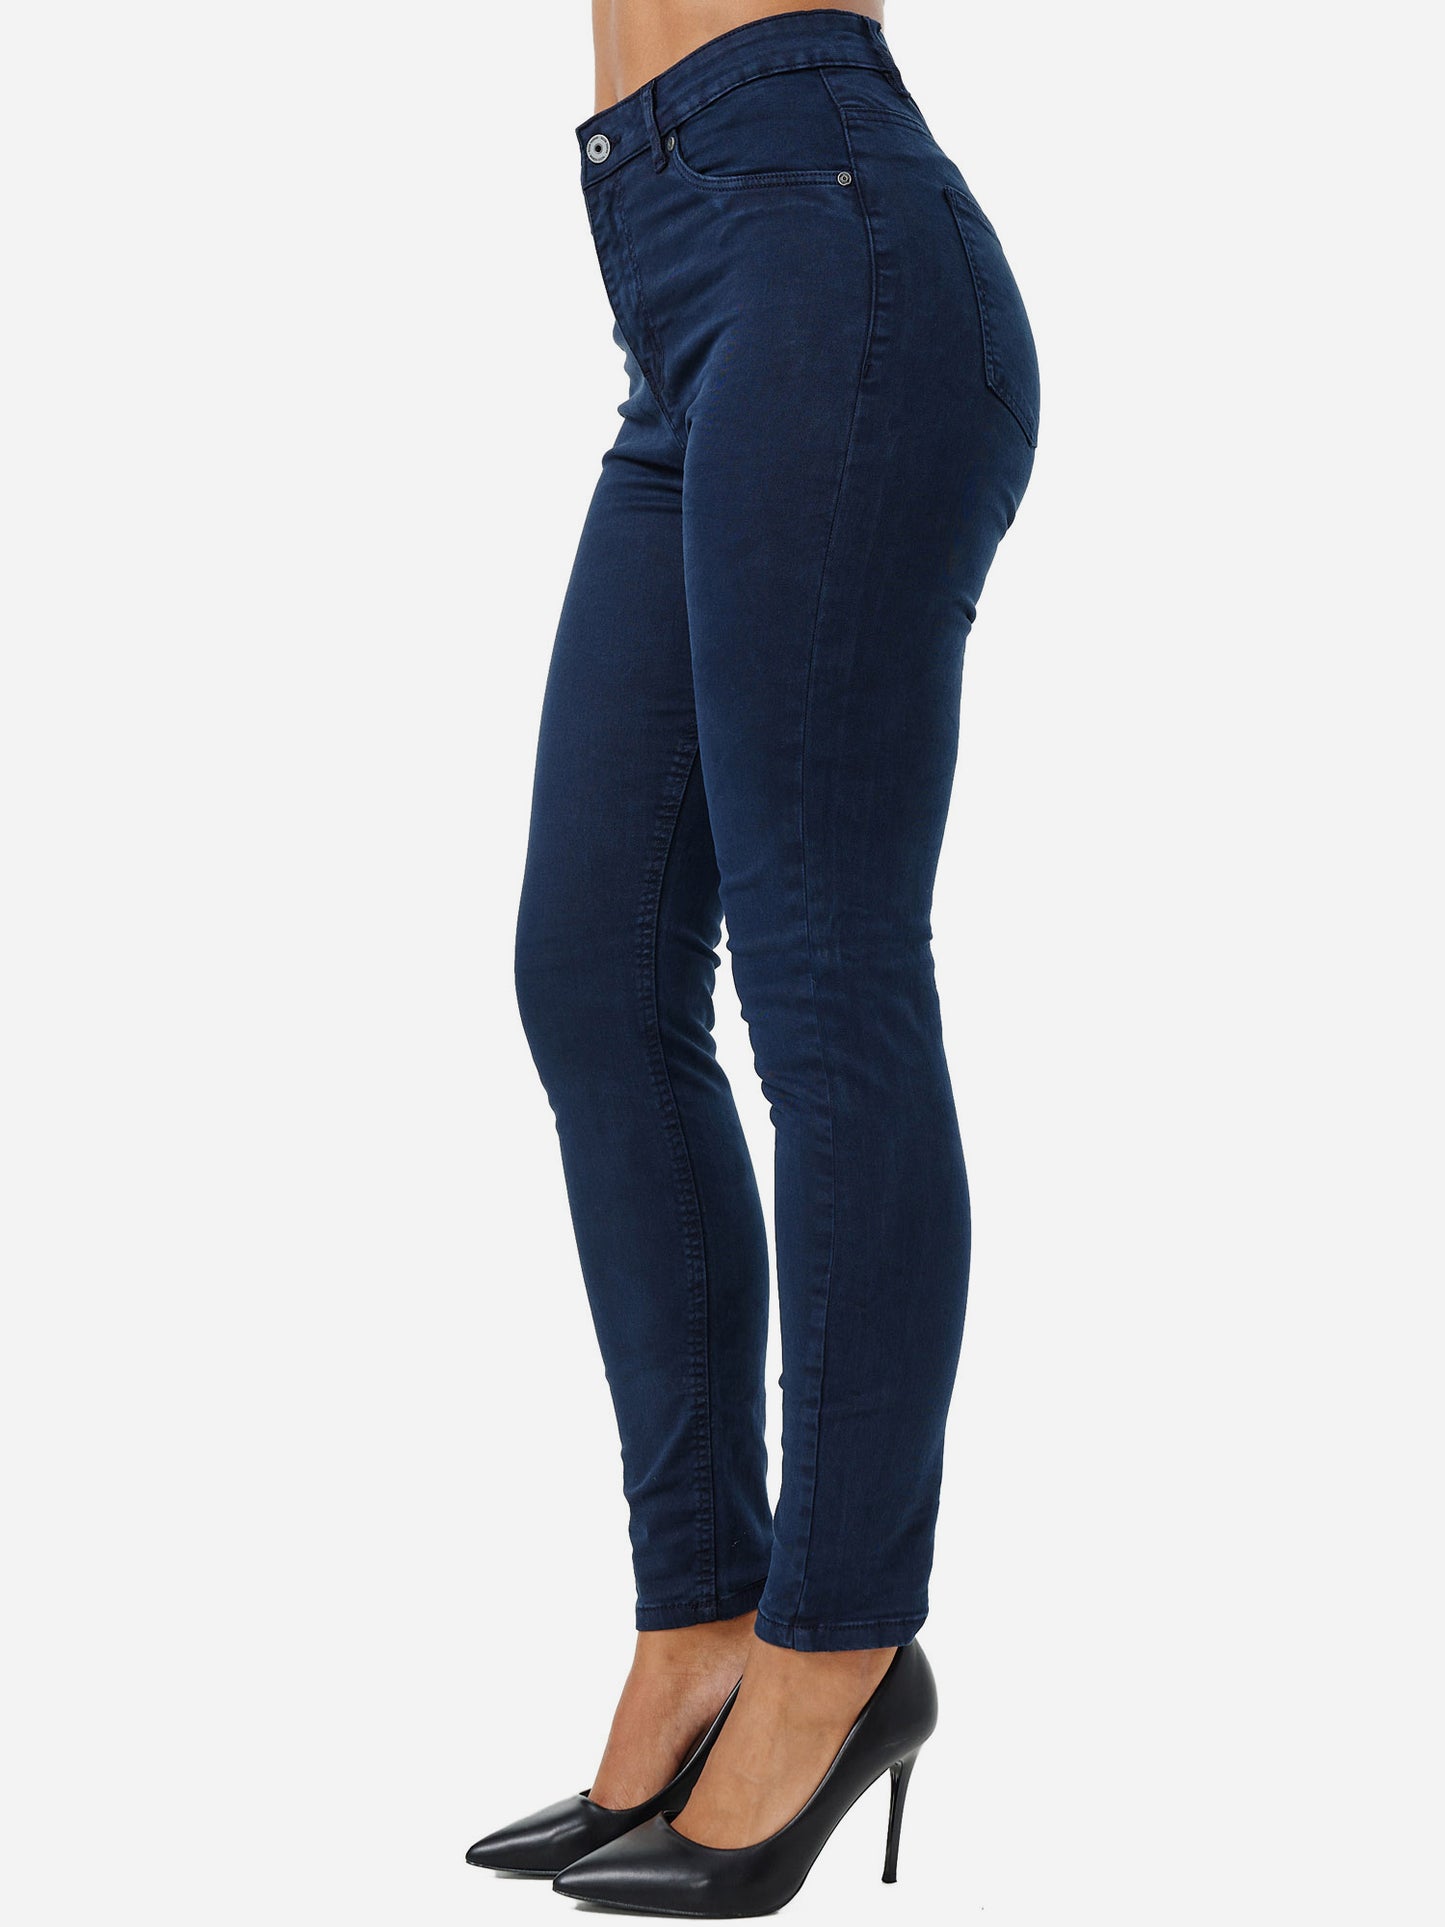 Tazzio Damen Skinny Fit High Rise Jeans F103